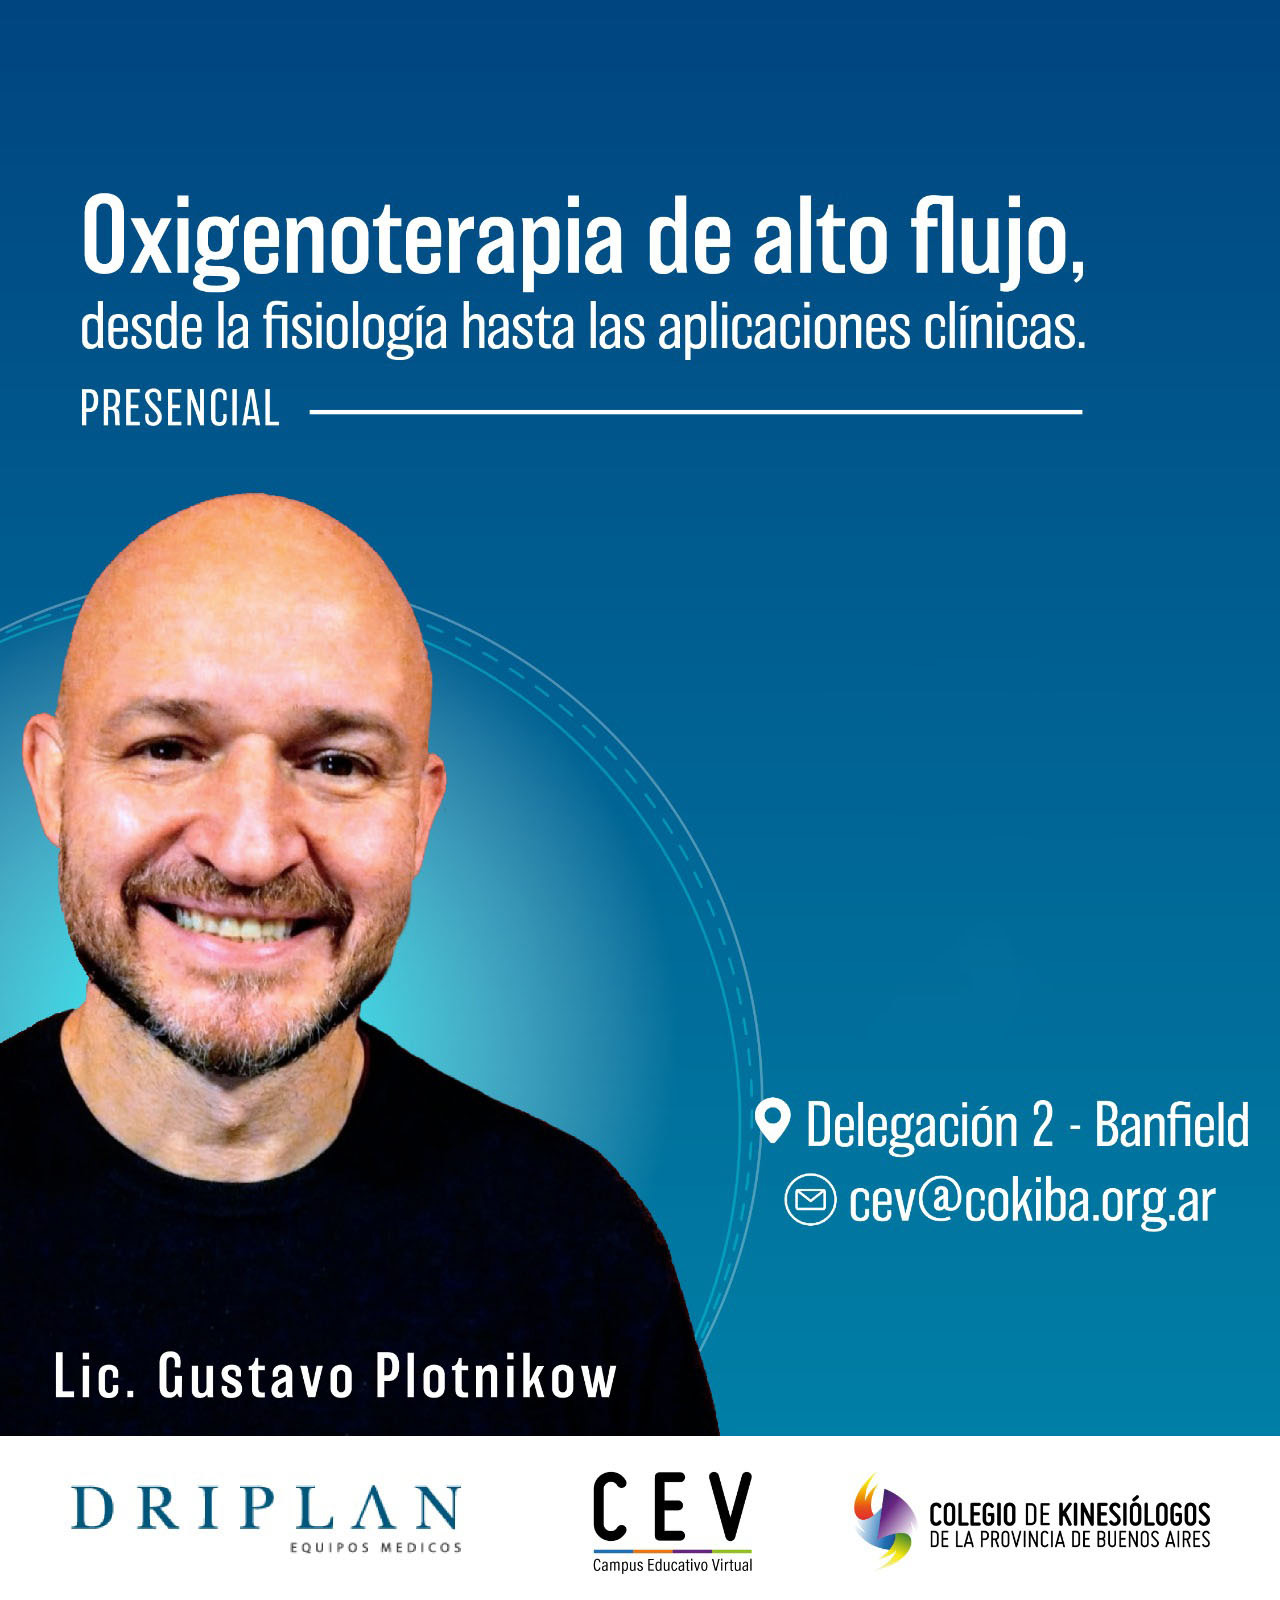 OXIGENOTERAPIA DE ALTO FLUJO desde la fisiología hasta las aplicaciones clínicas.